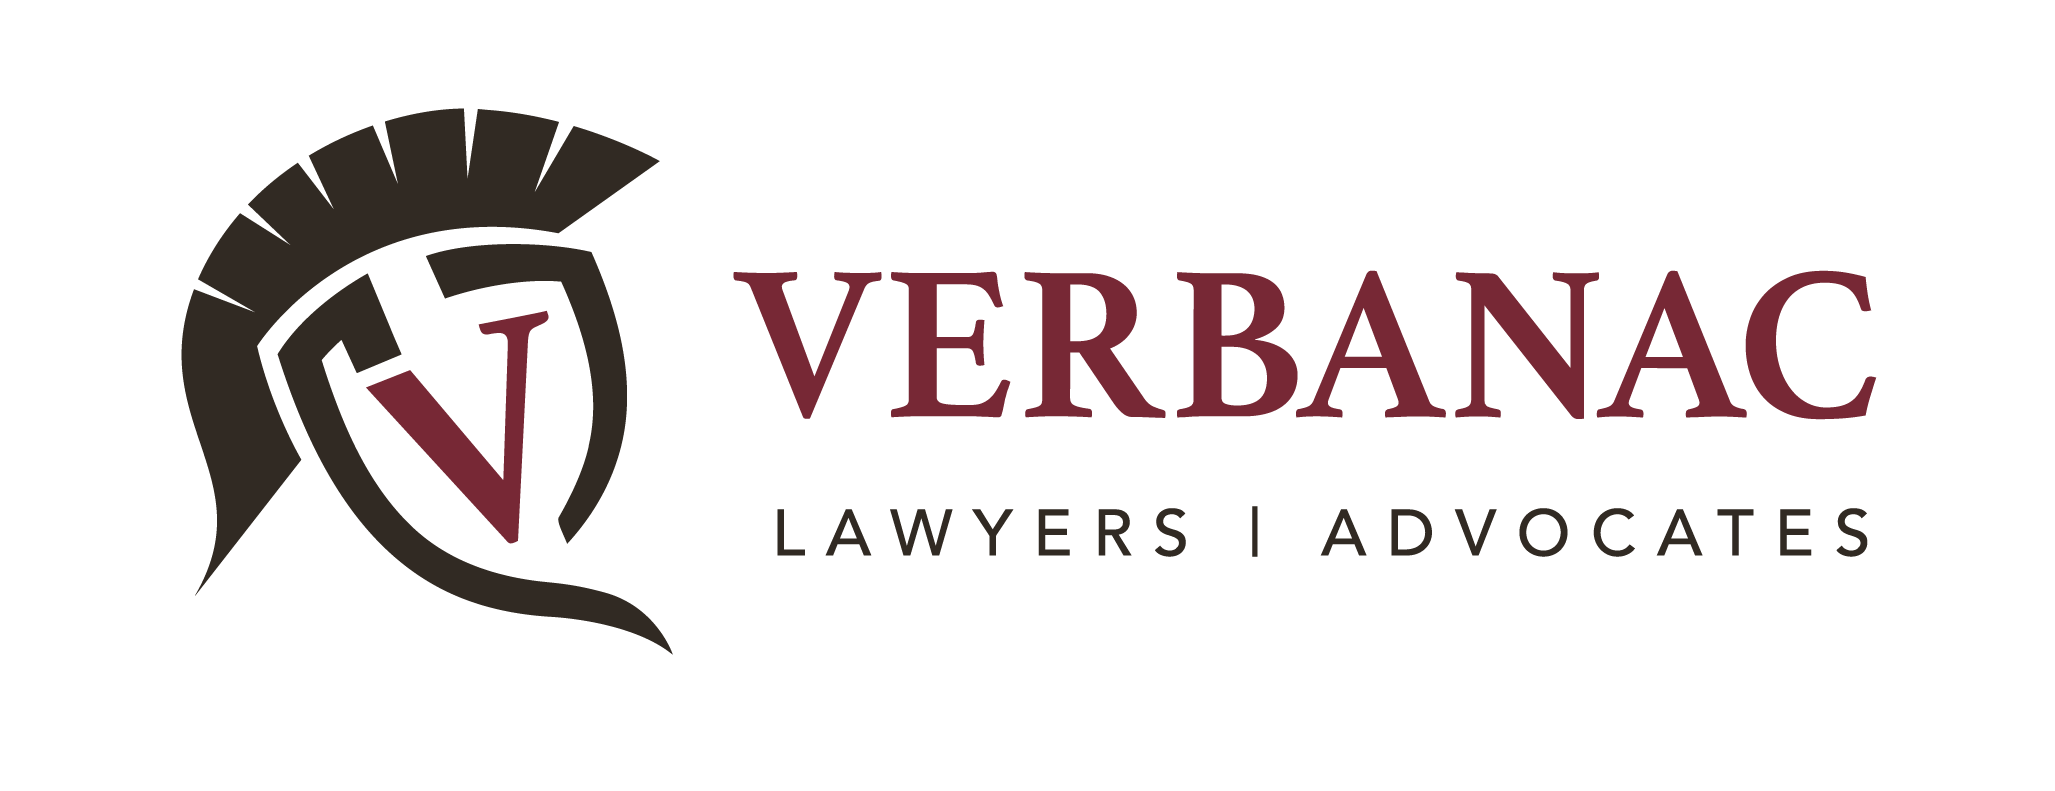 Verbanac_logo_development_Final-two_colour